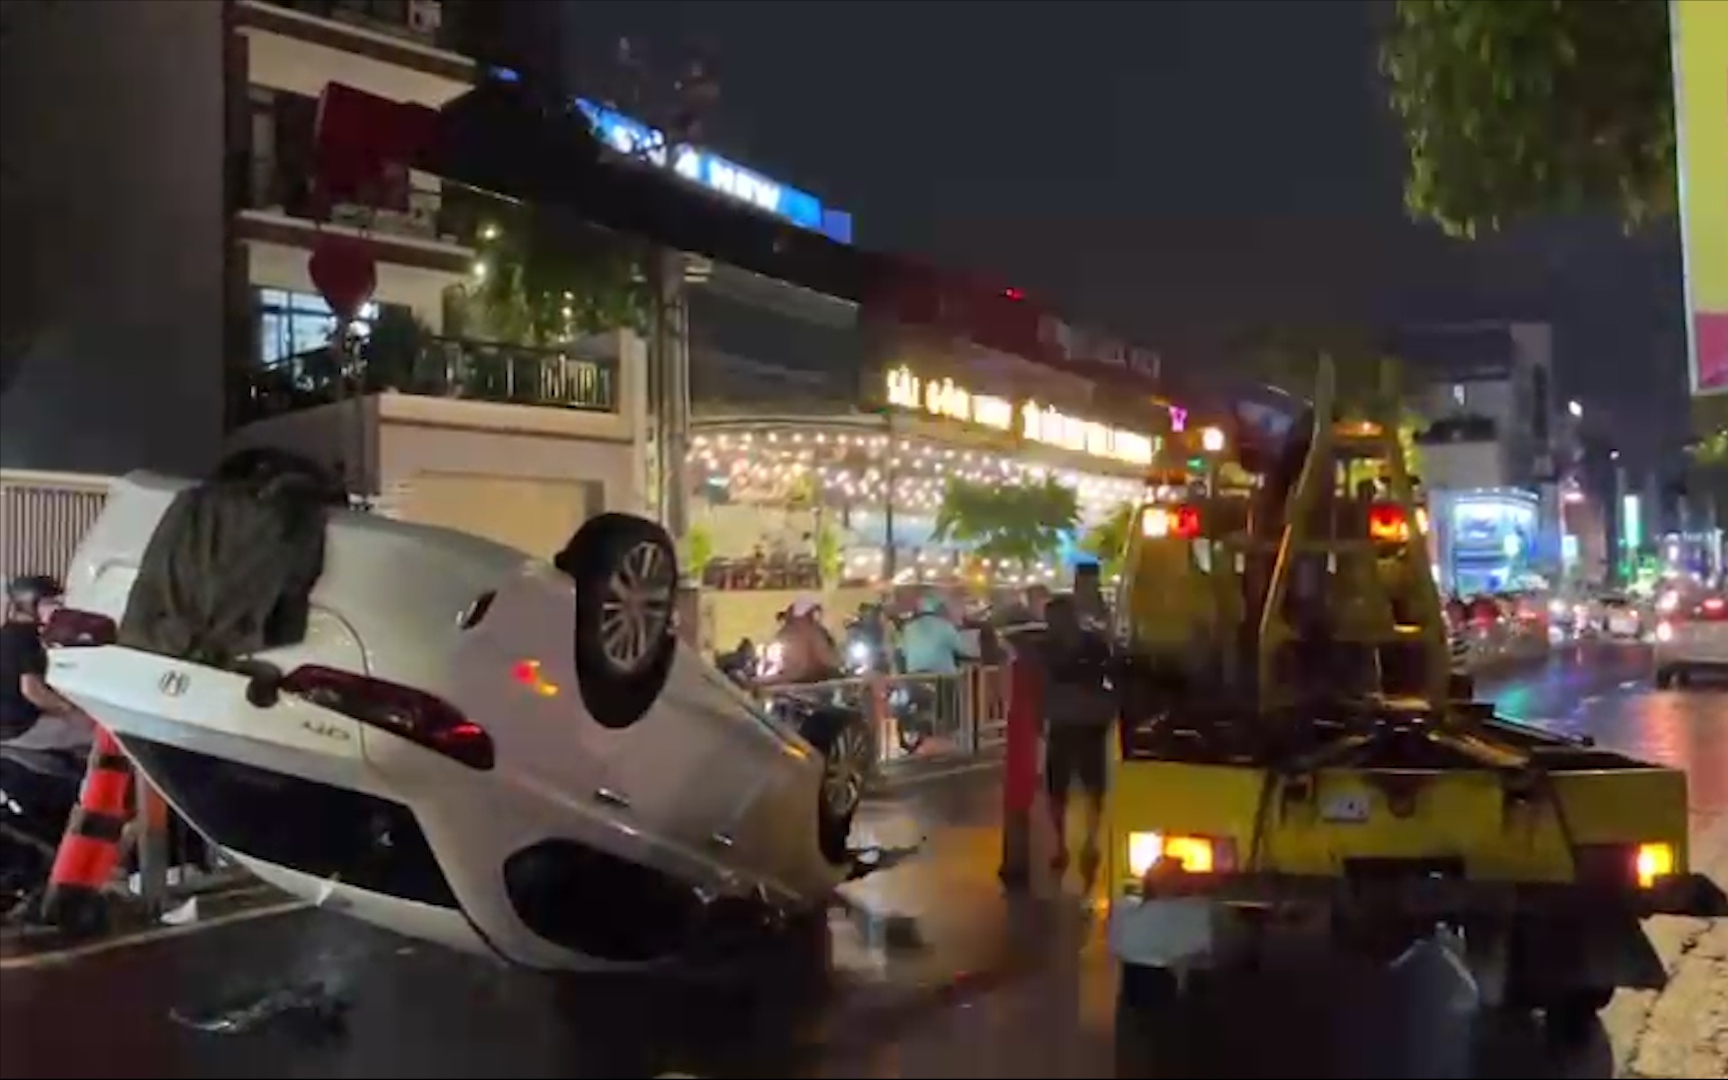 Nóng: Trong đêm, người phụ nữ lái ô tô tông vào dải phân cách, khiến xe lật ngược trên phố Sài thành